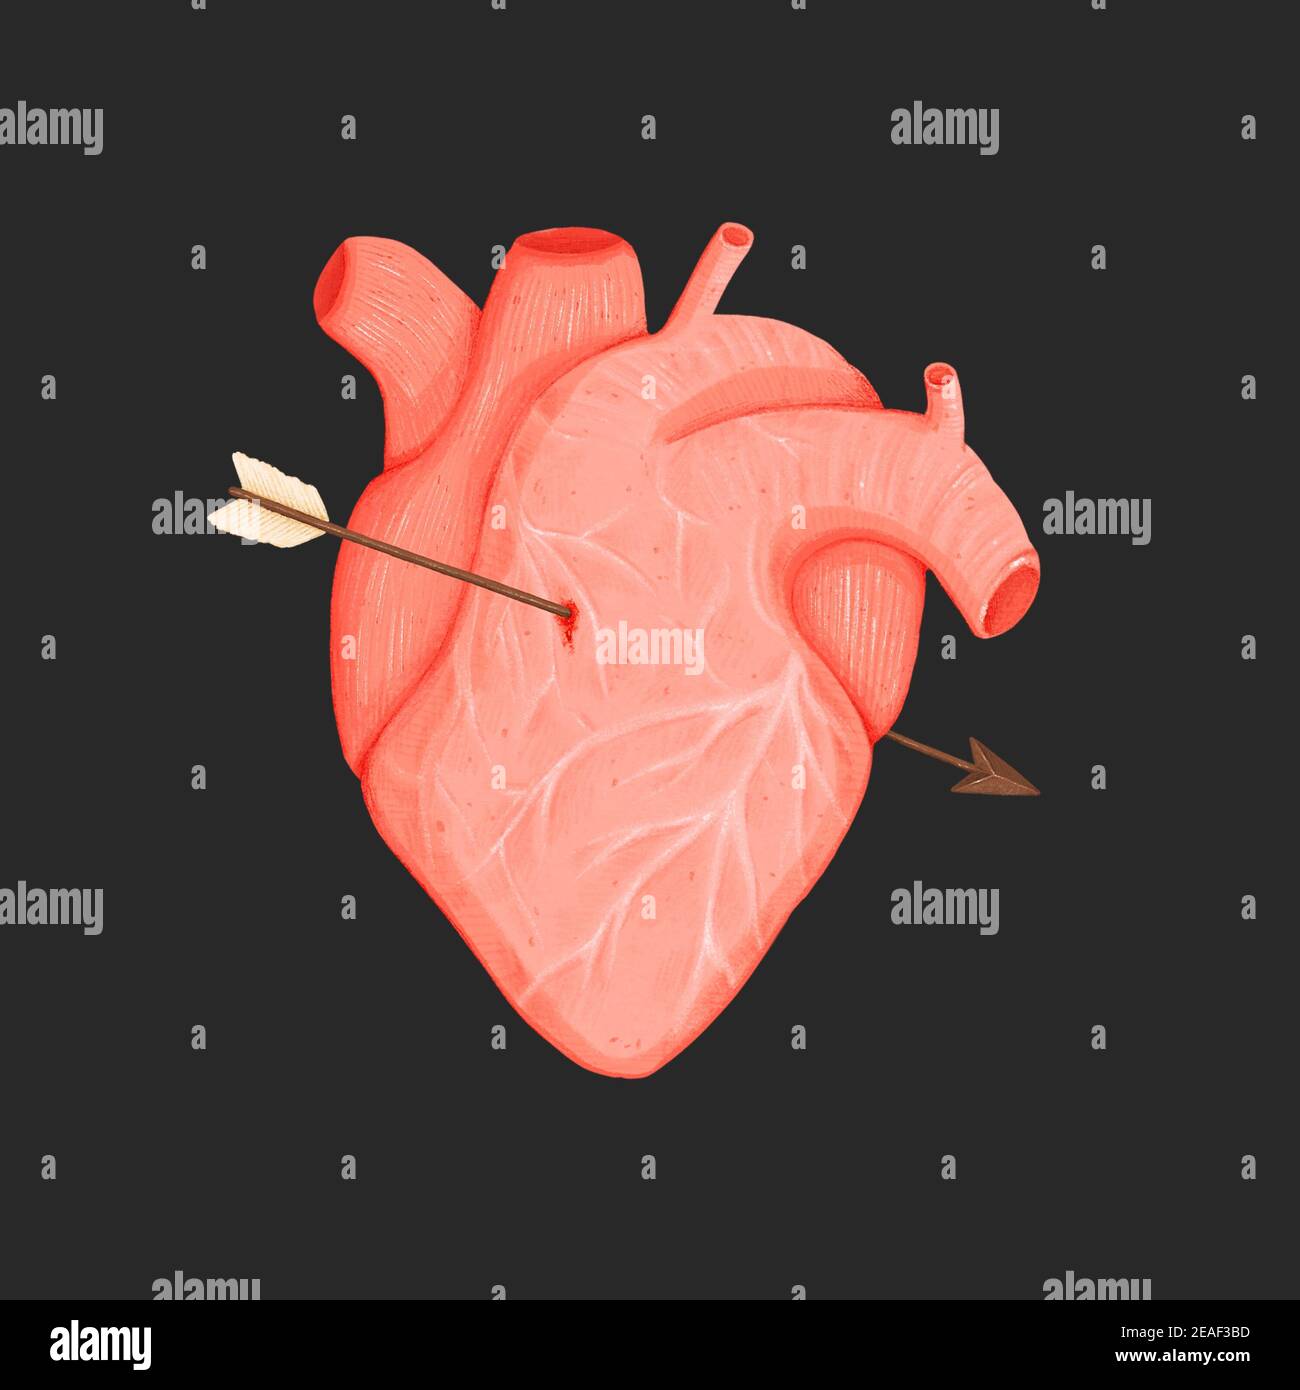 Coeur humain avec flèche de Cupid isolée sur fond noir. Illustration dessinée à la main Banque D'Images